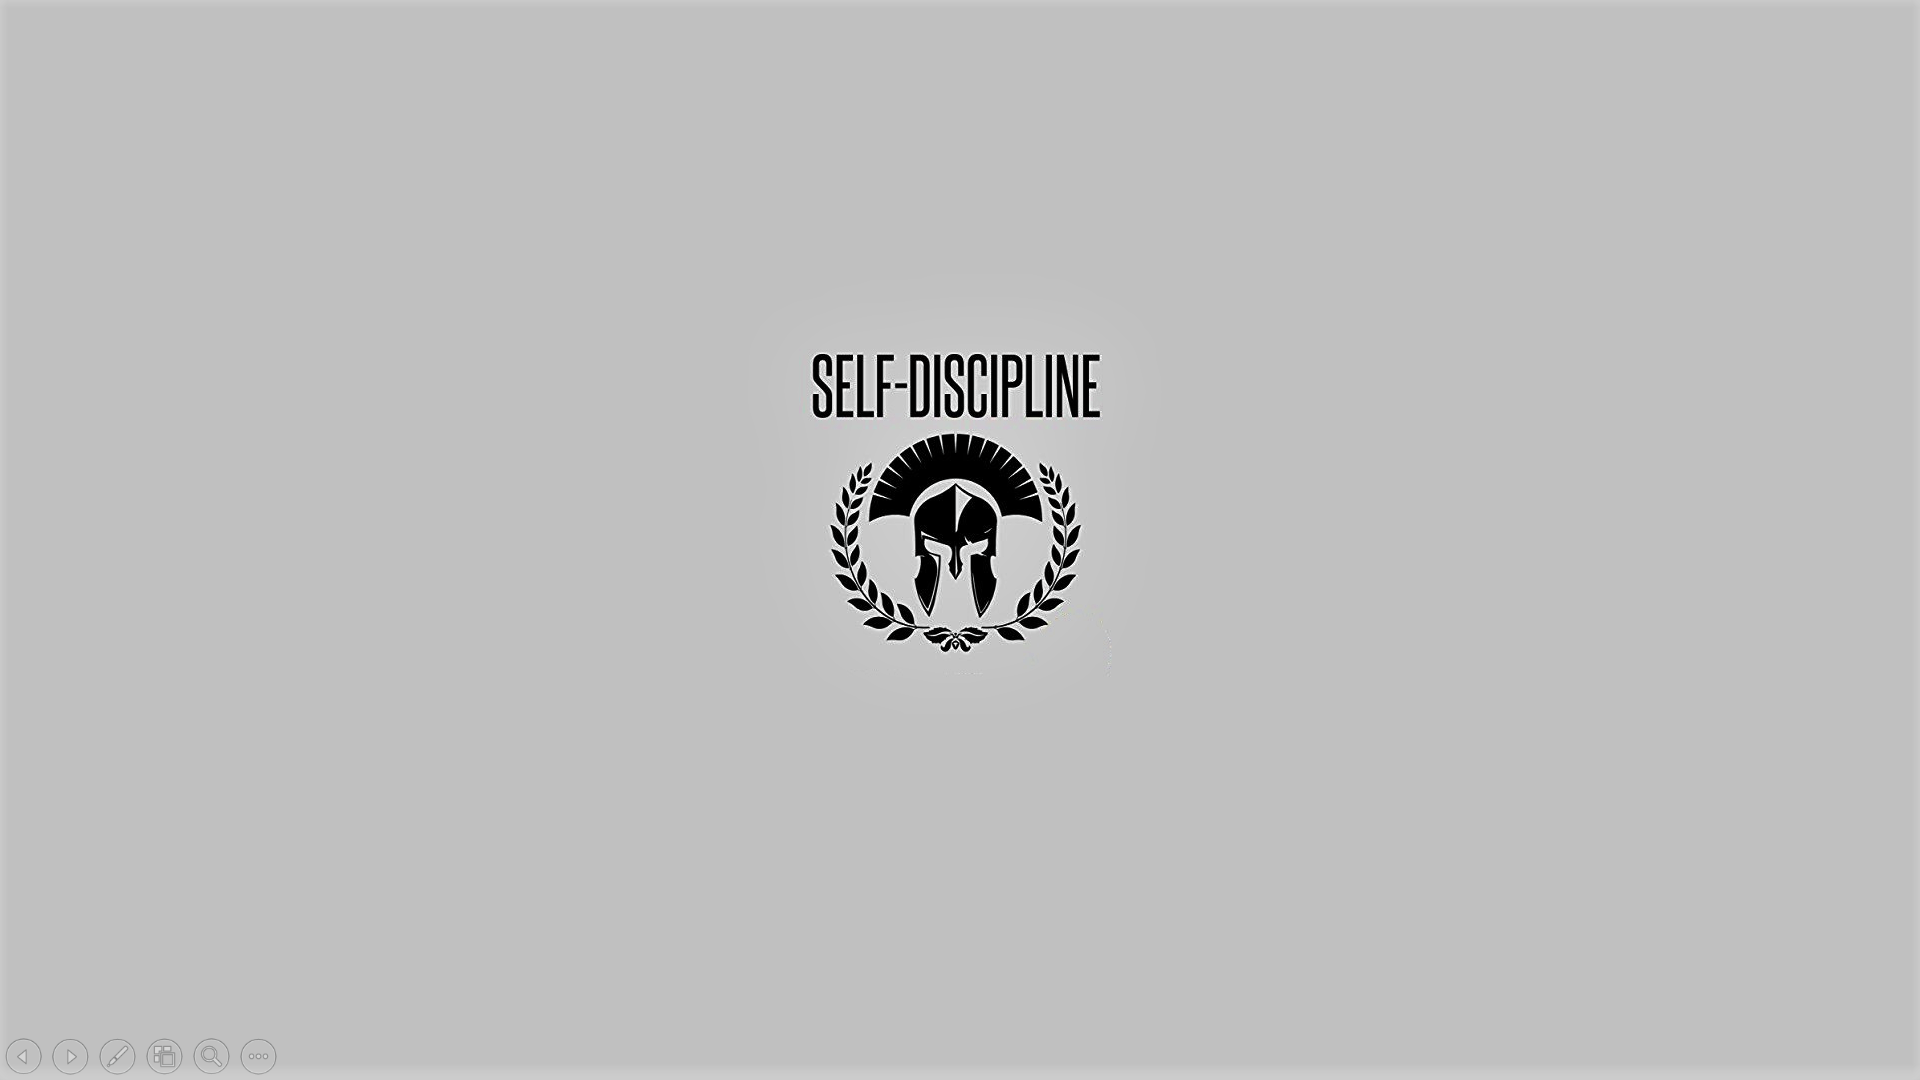 Self Discipline. Self discipline, Discipline, Self